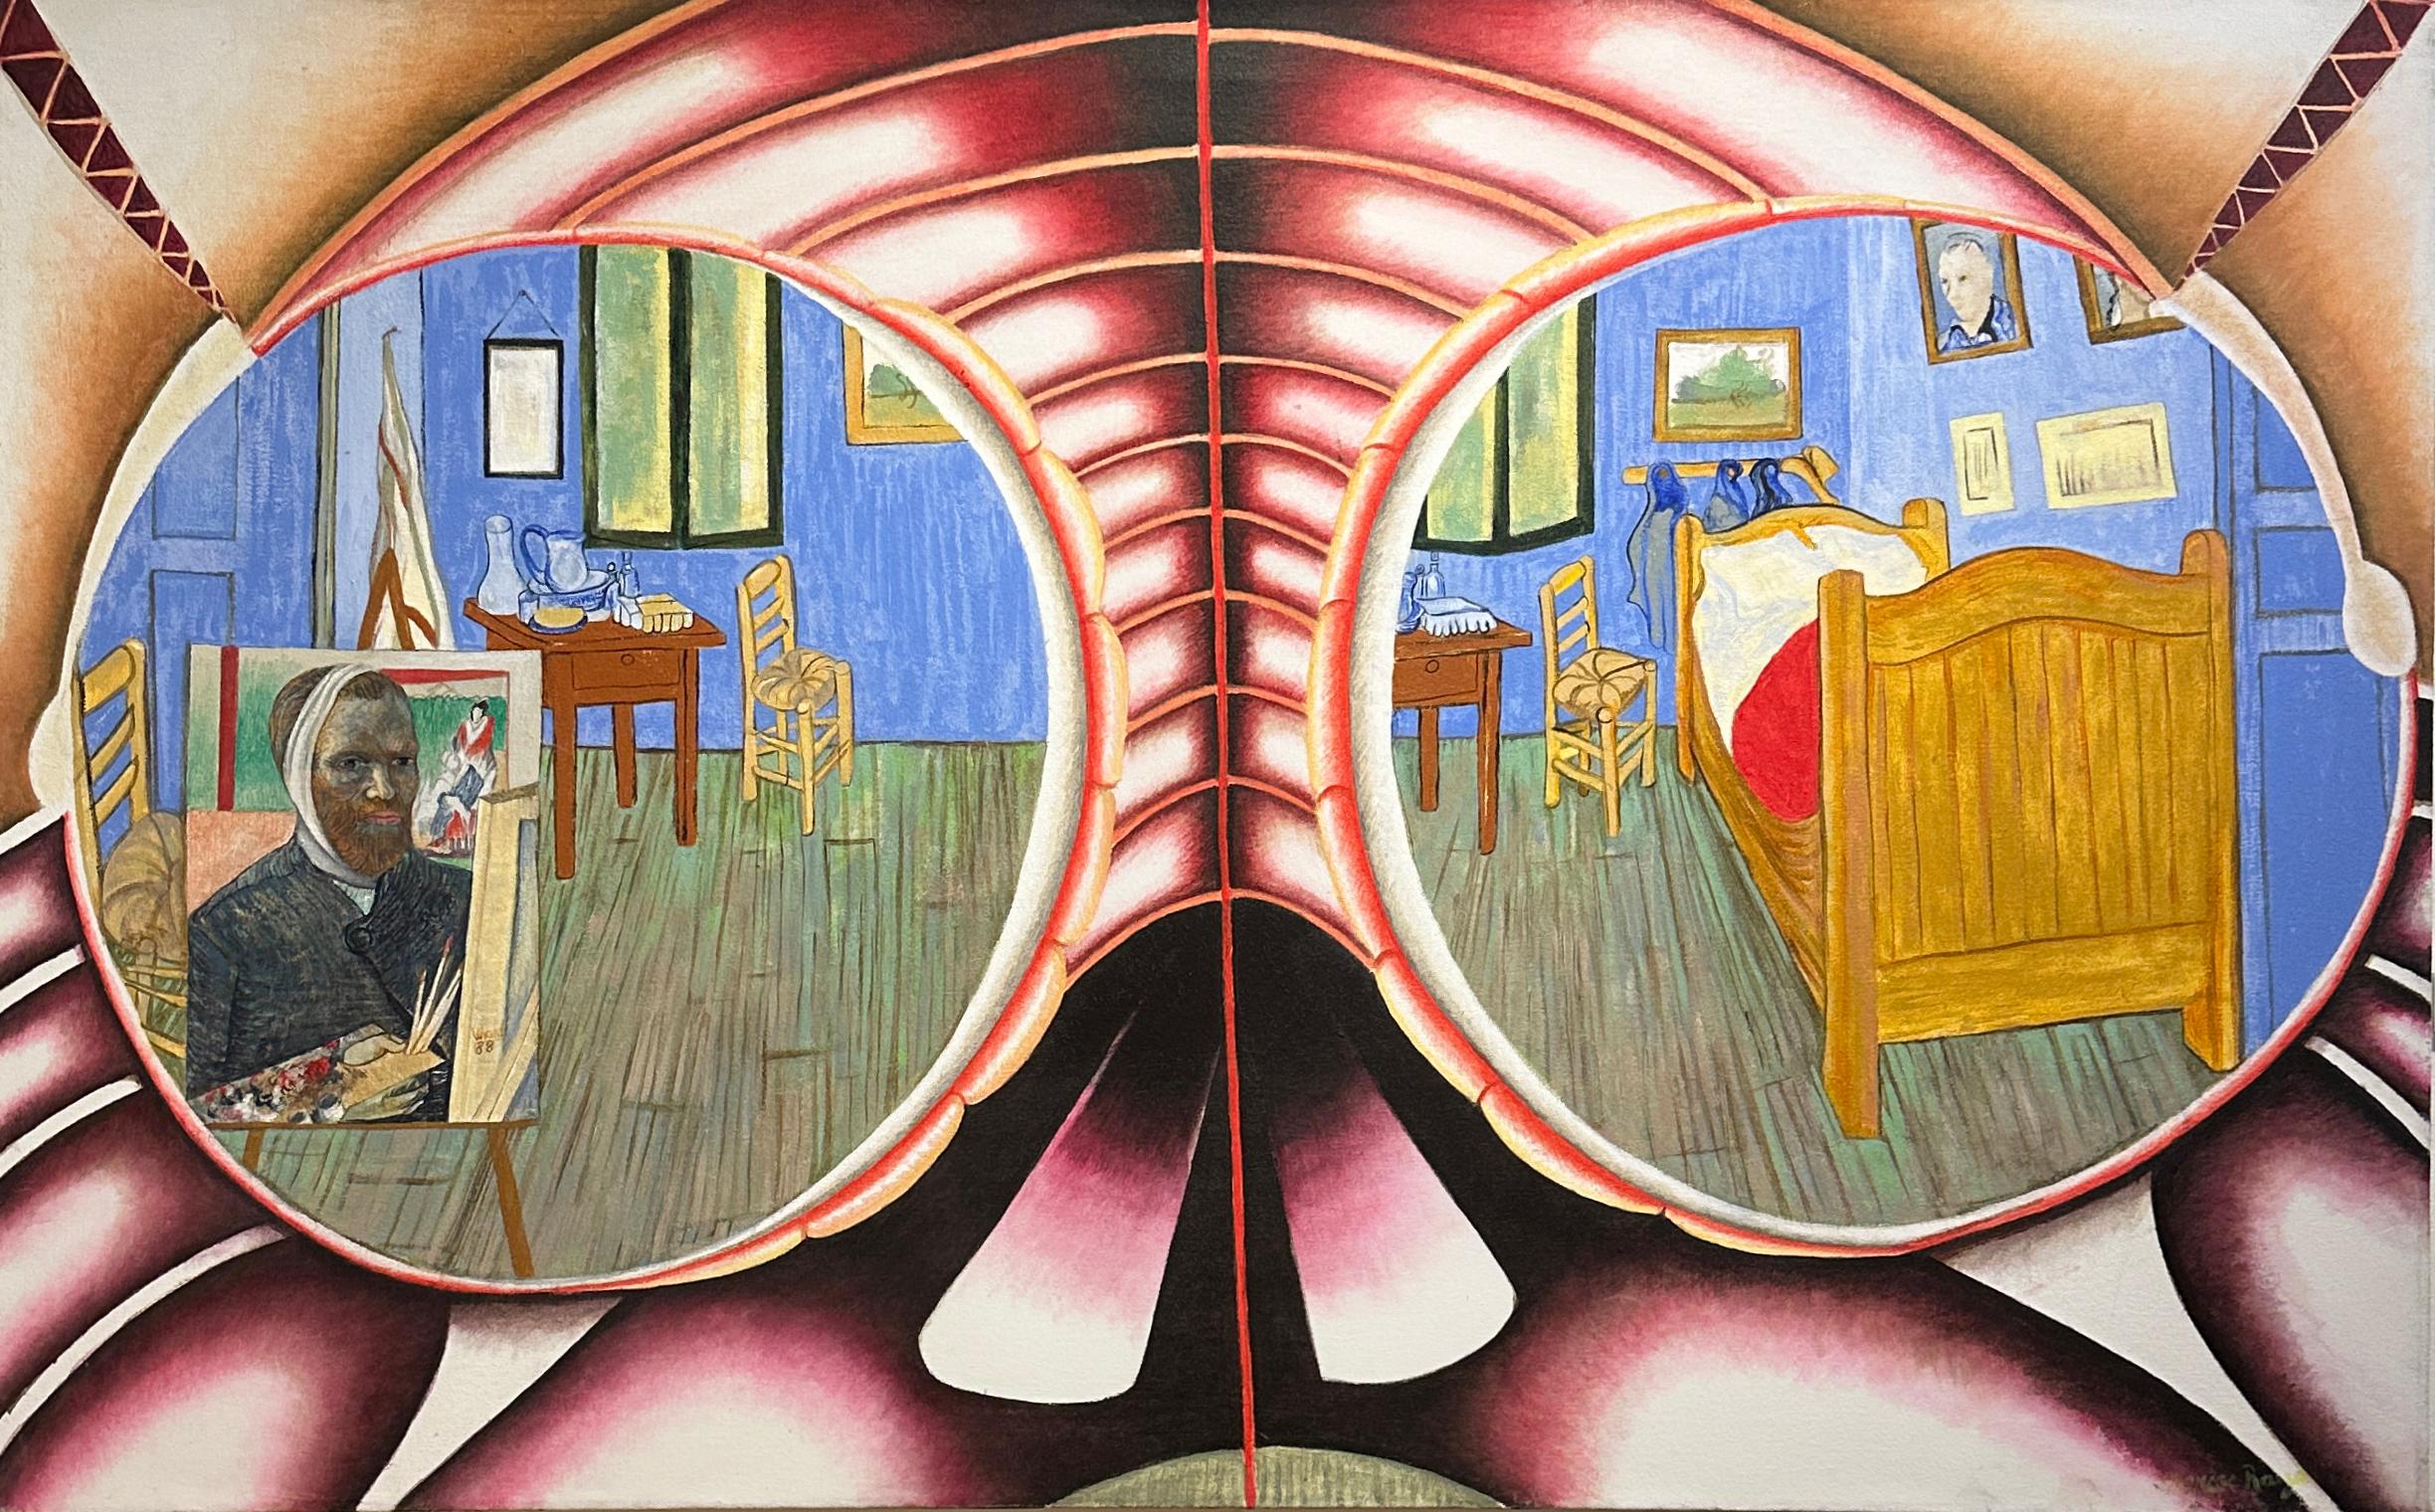 Marcos Raya Abstract Painting – Through the Eyes of Van Gogh - Eulengemälde, das auf Van Goghs „Das Schlafzimmer“ blickt